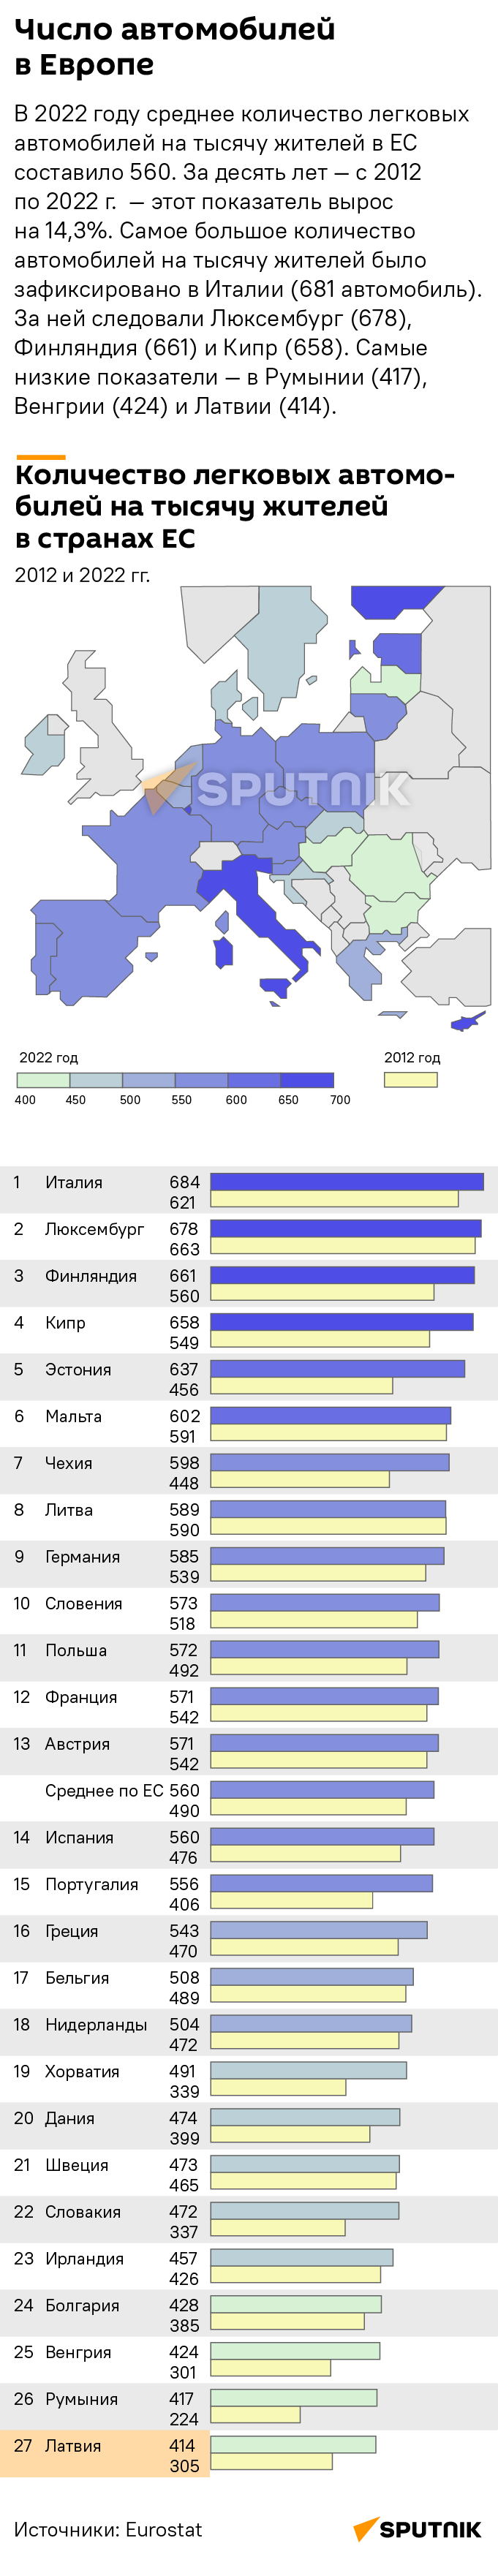 Число автомобилей в Европе 2022 - Sputnik Латвия